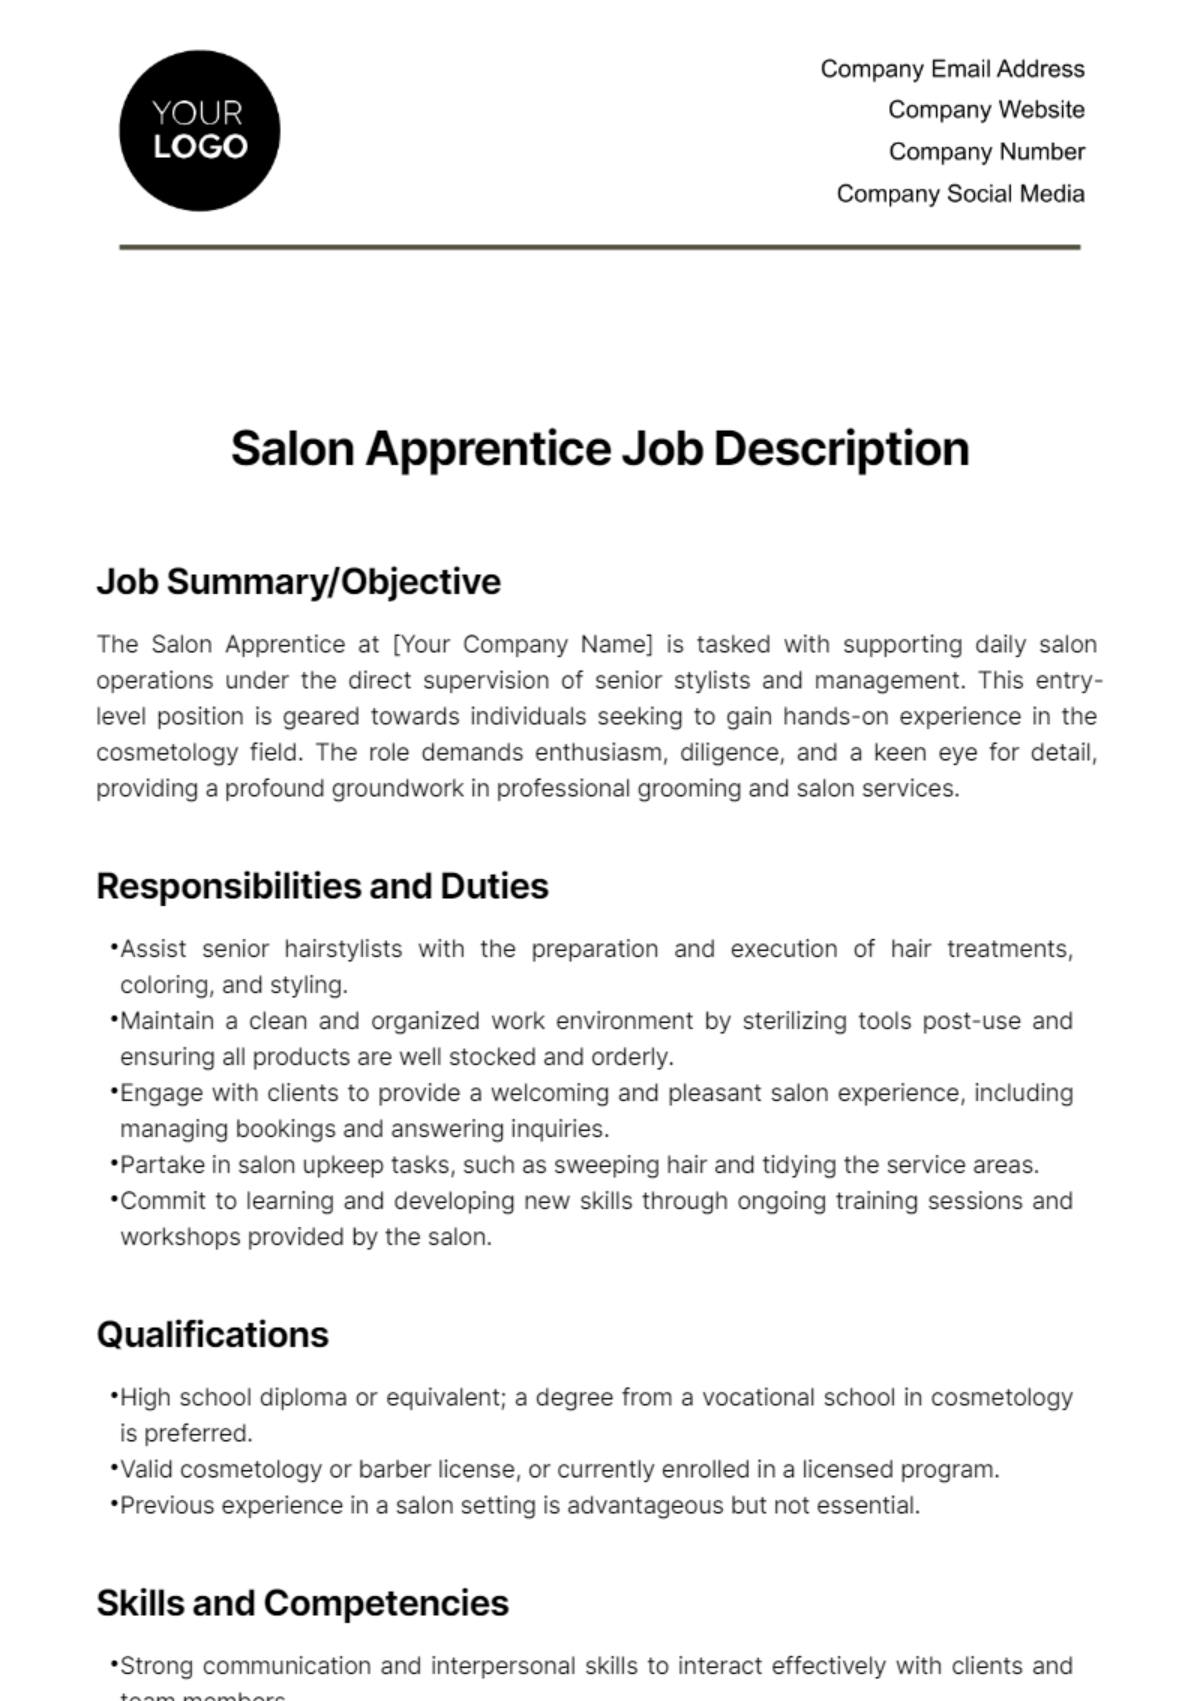 Salon Apprentice Job Description Template